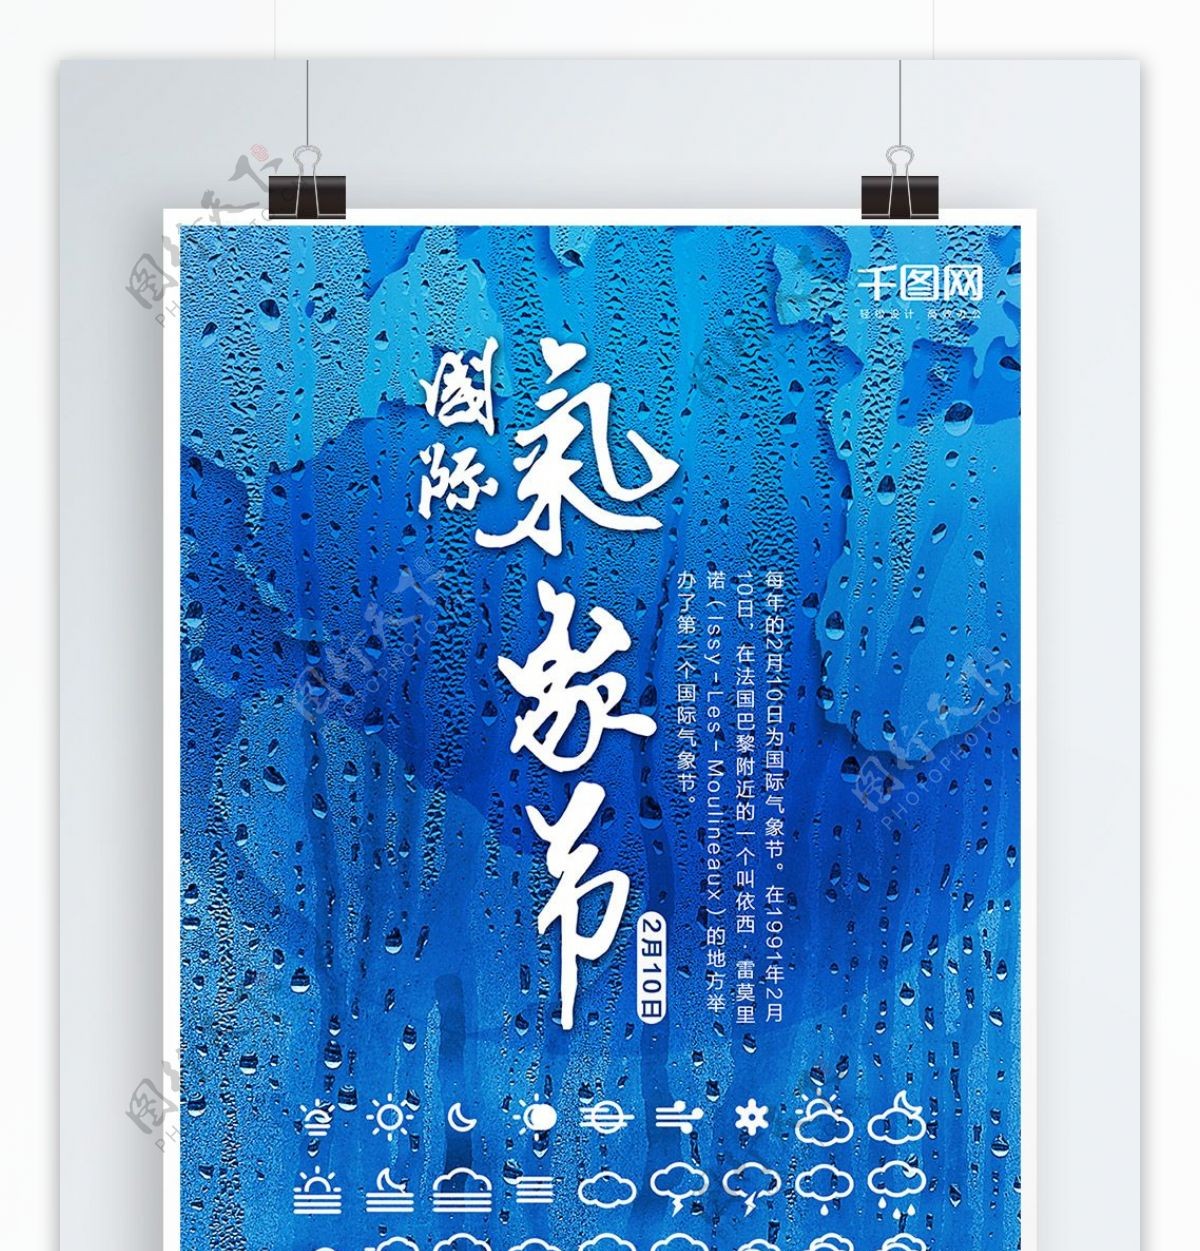 雨天地球背景国际气象节海报设计